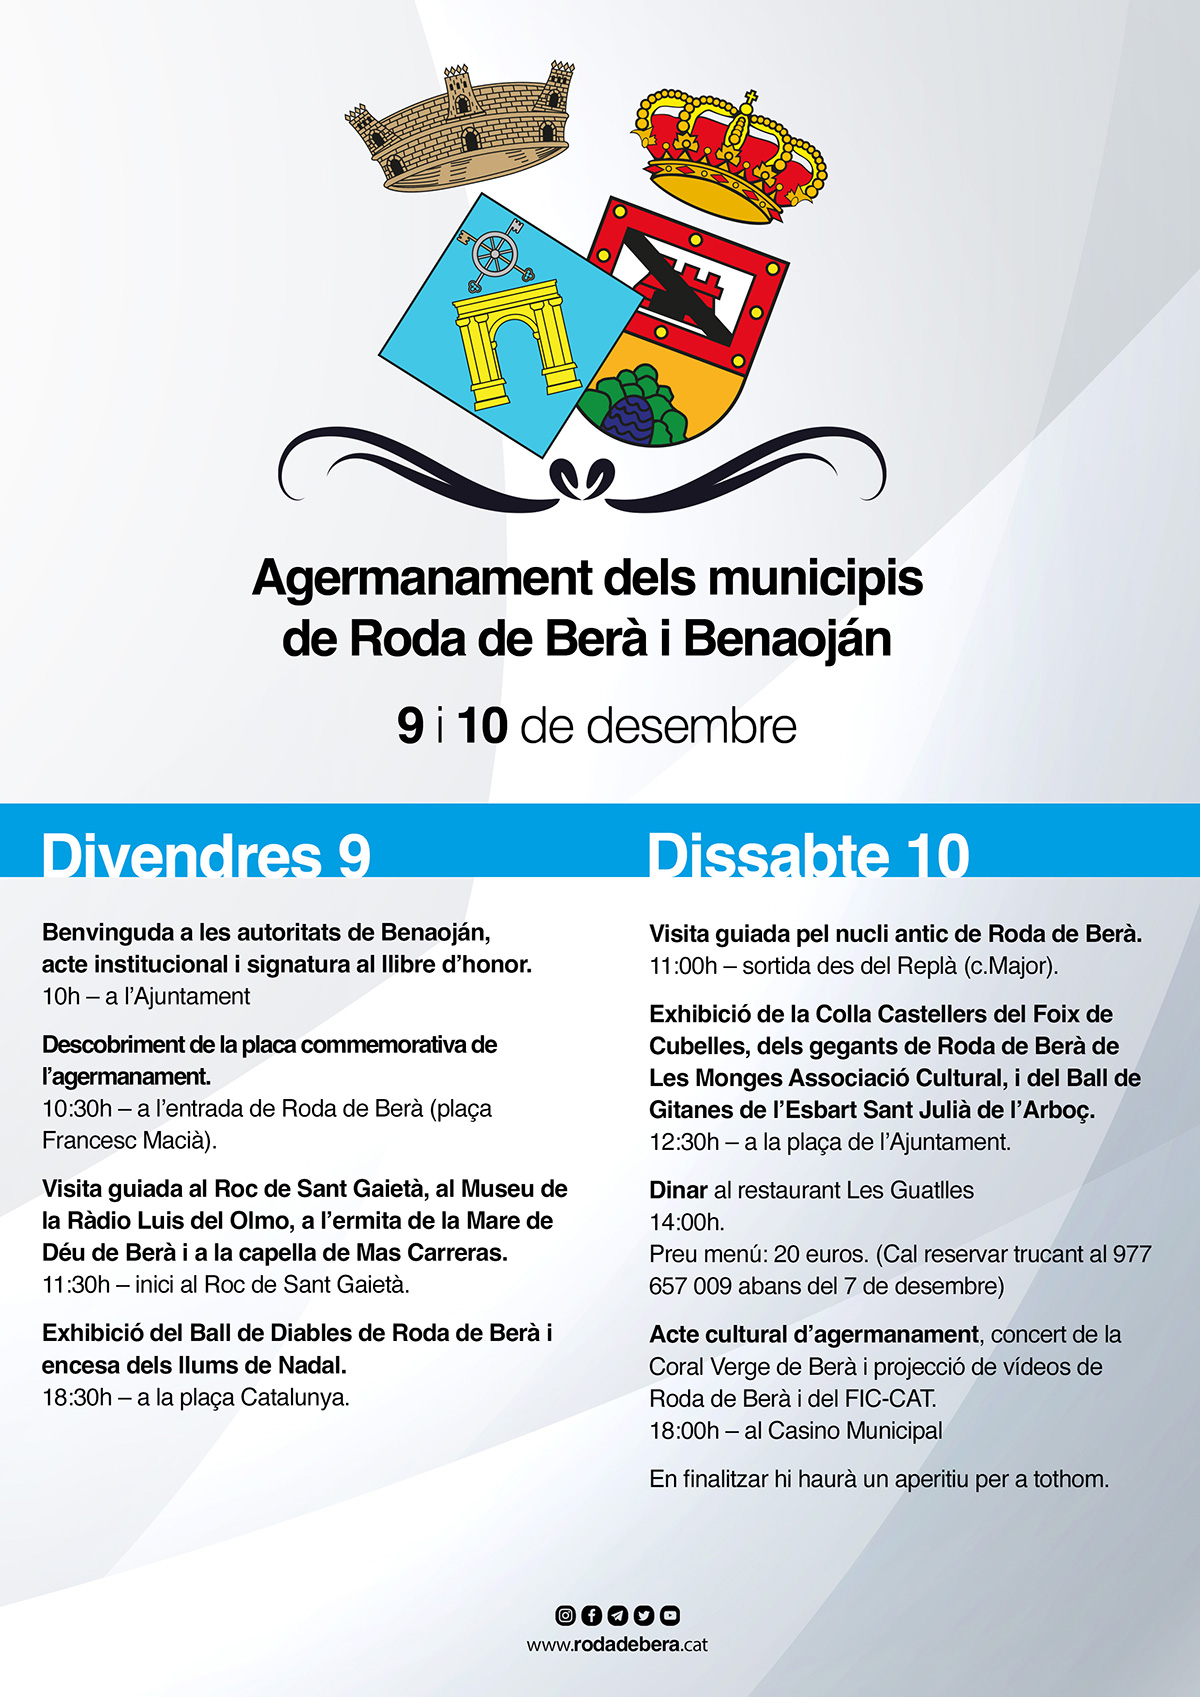 Roda de Berà oficialitzarà l’agermanament amb Benaoján els dies 9 i 10 de desembre 